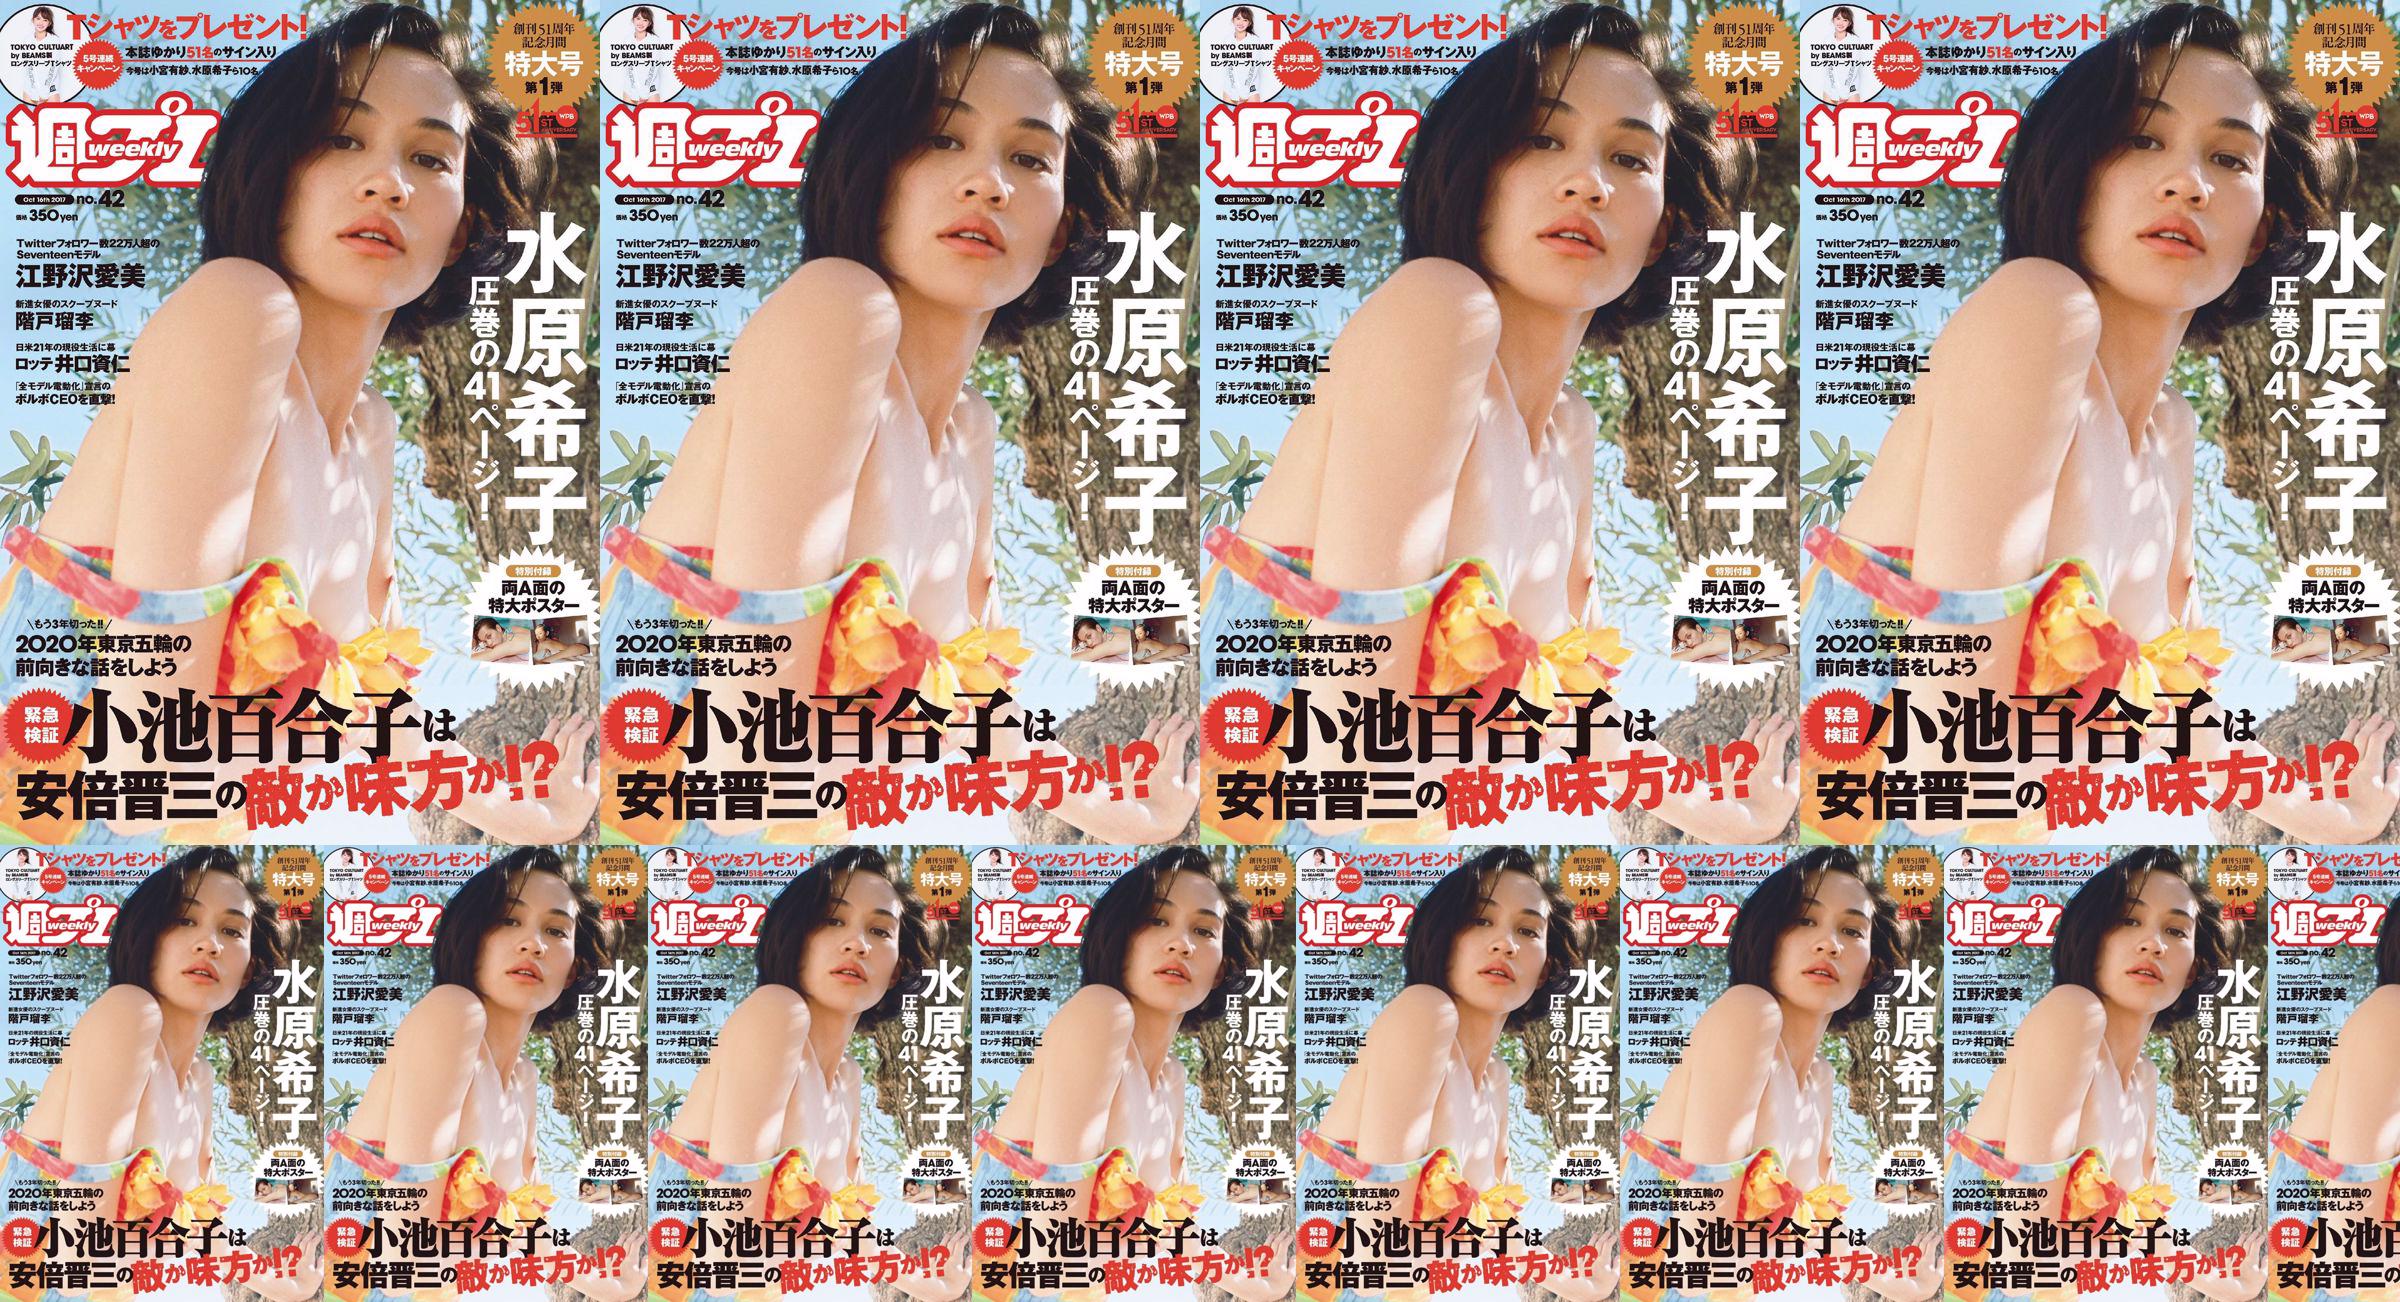 Kiko Mizuhara Manami Enosawa Serina Fukui Miu Nakamura Ruri Shinato [Weekly Playboy] 2017 No.42 Photo Magazine No.49c5c7 Page 1